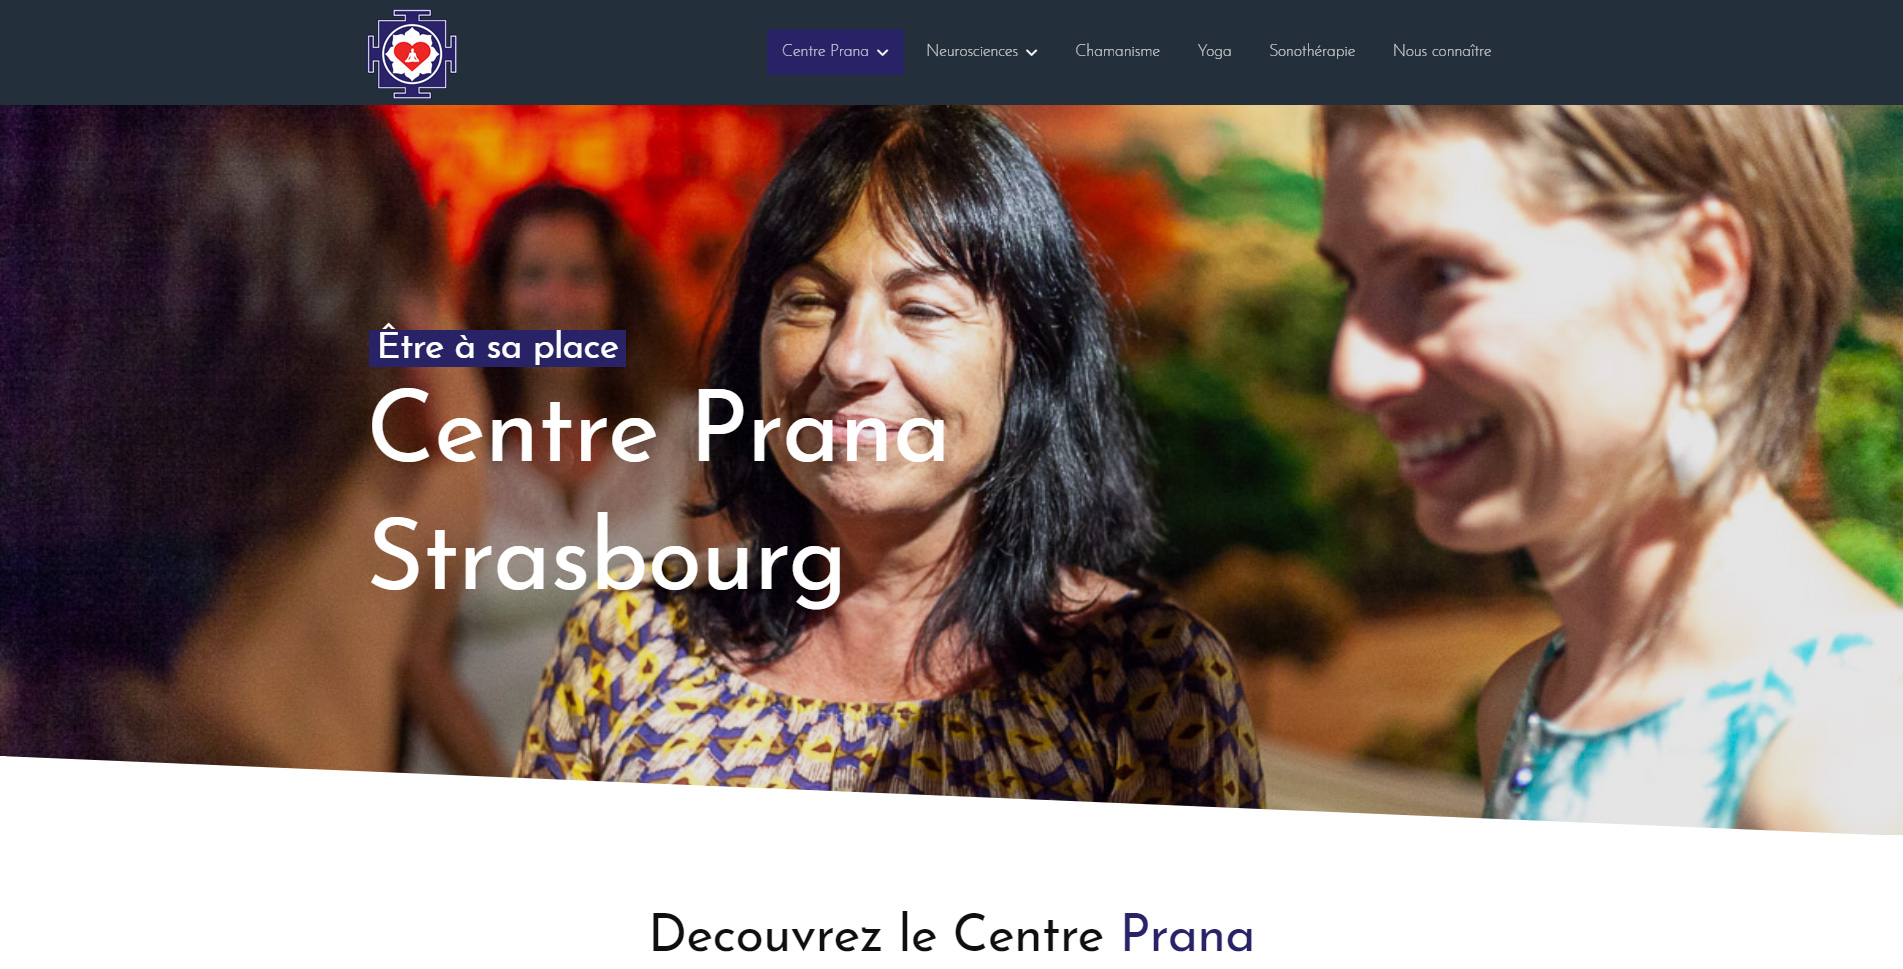 Centreprana Strasbourg est un client de l'agence web Karedess, agence web situé à Mulhouse